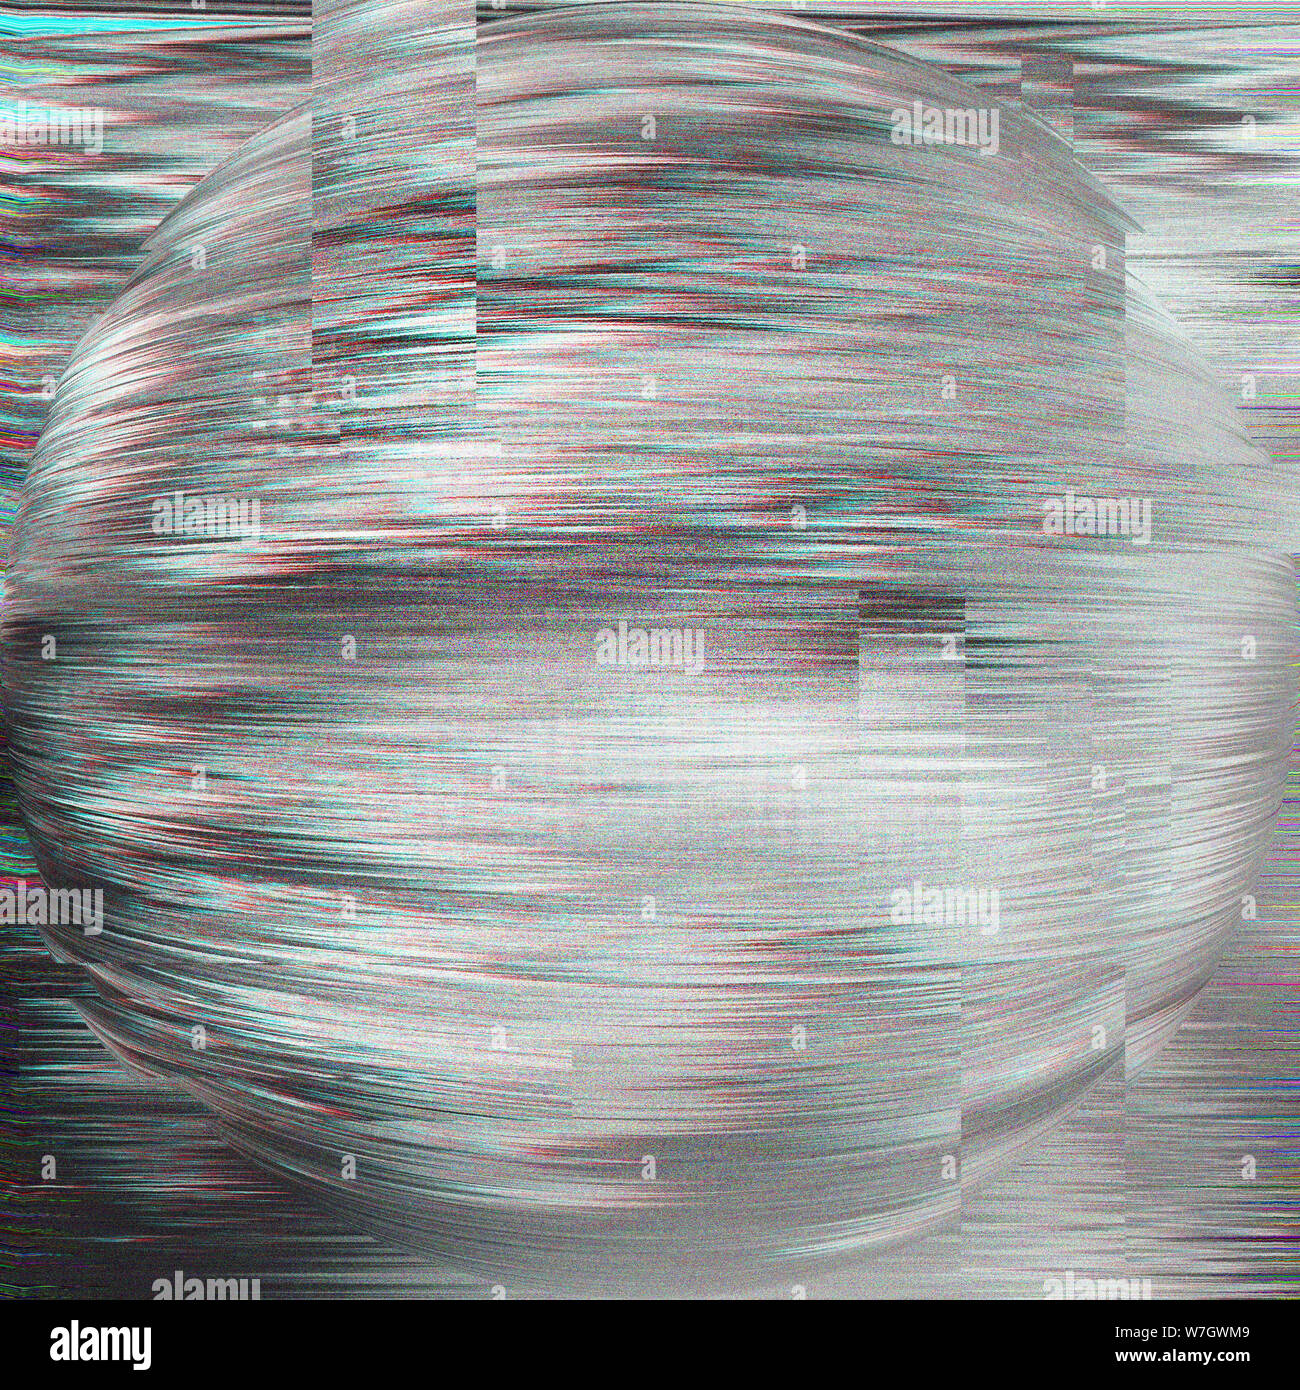 390 Digital Glitch: a Glitchy and Digital-inspired Background